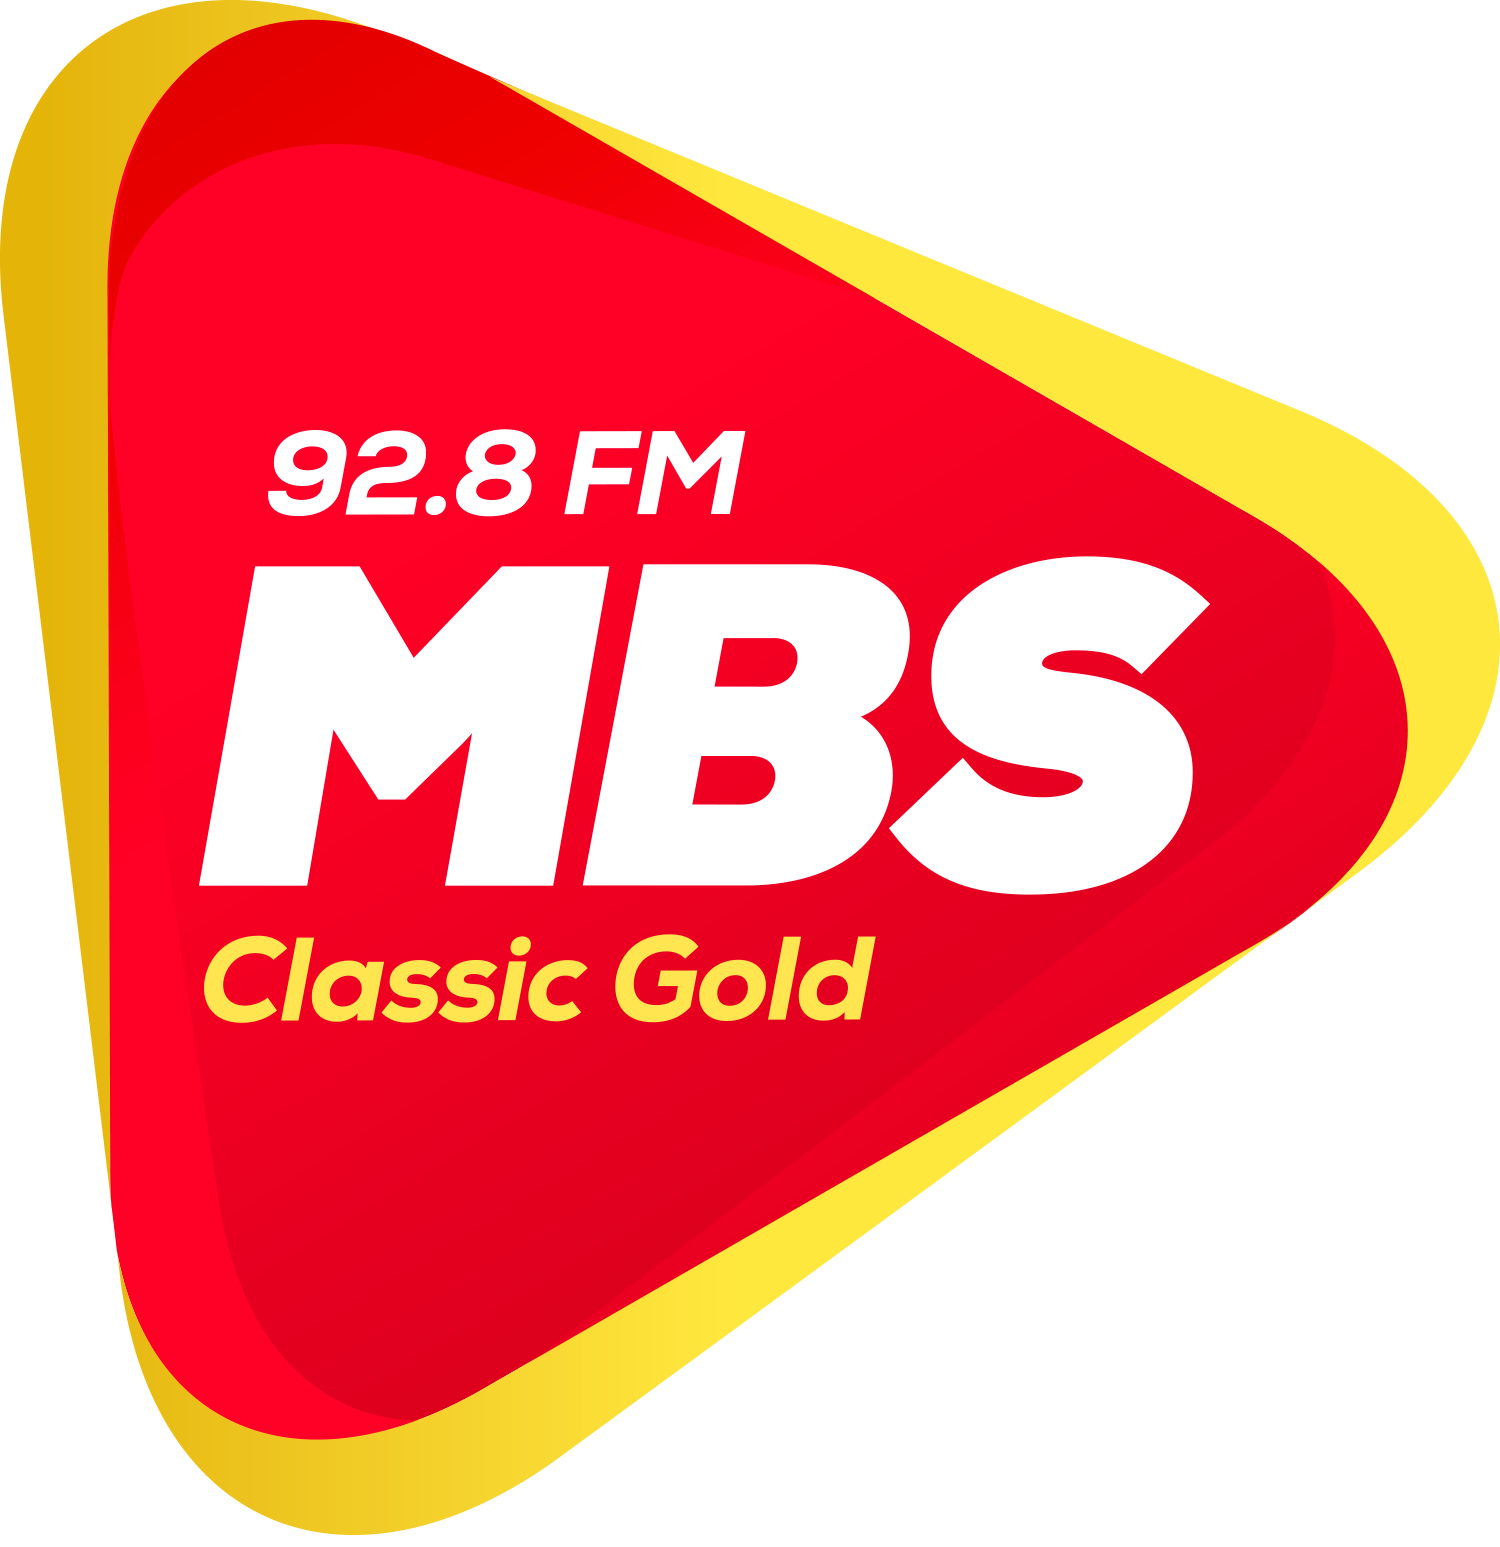 Radio MBS 92.8 FM